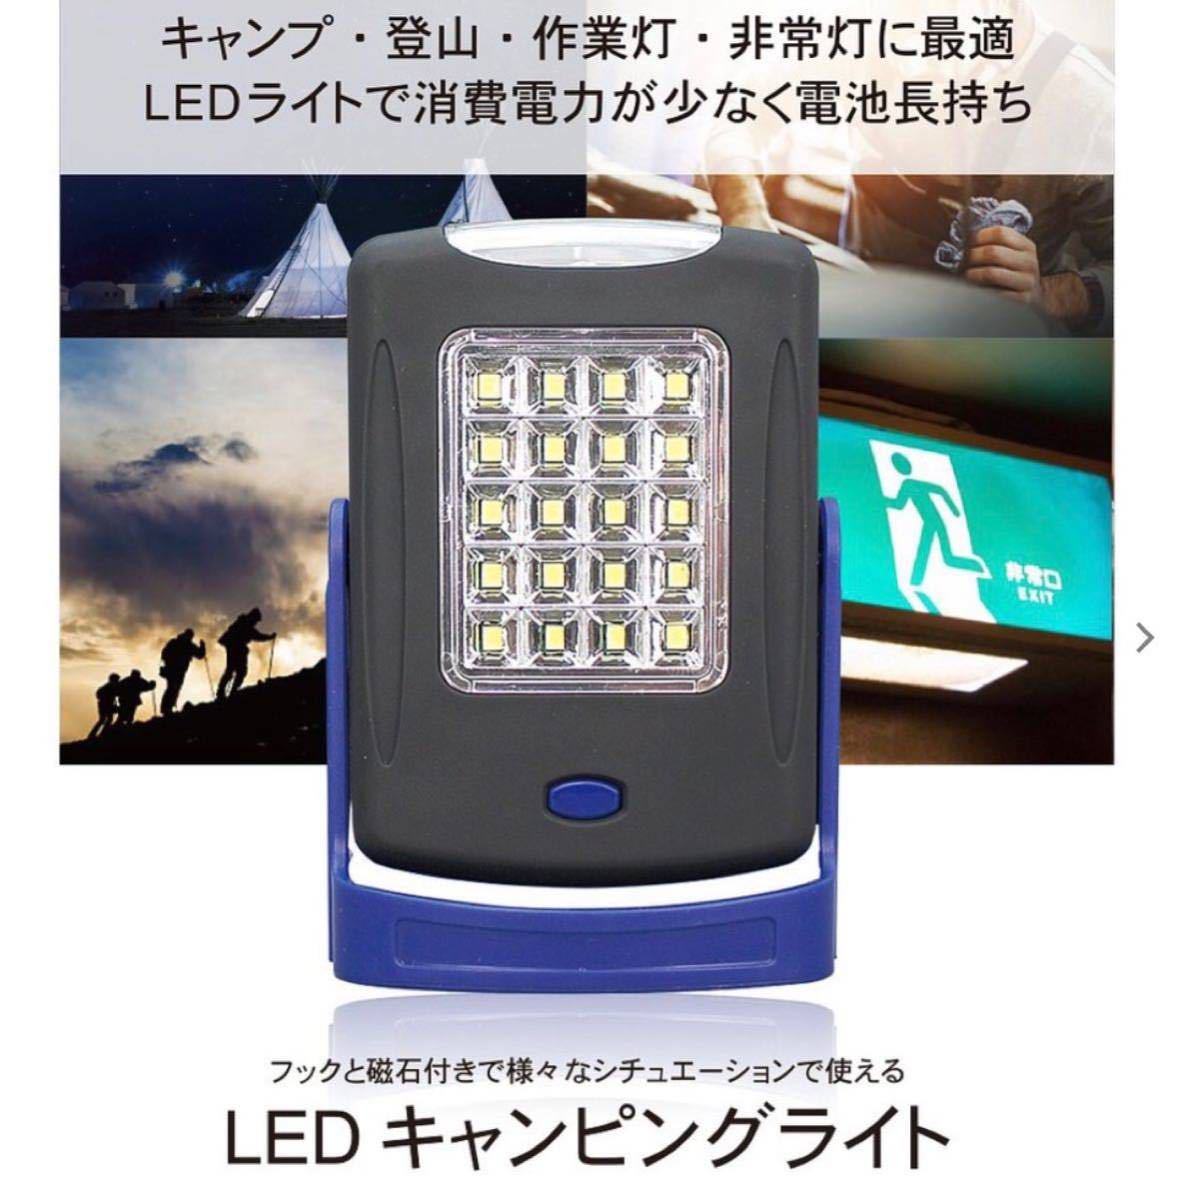 LEDライト マグネット 電池式 ランタン 防災 キャンプ ライト 吊り下げ 卓上 キャンピングライト 【四個セット】